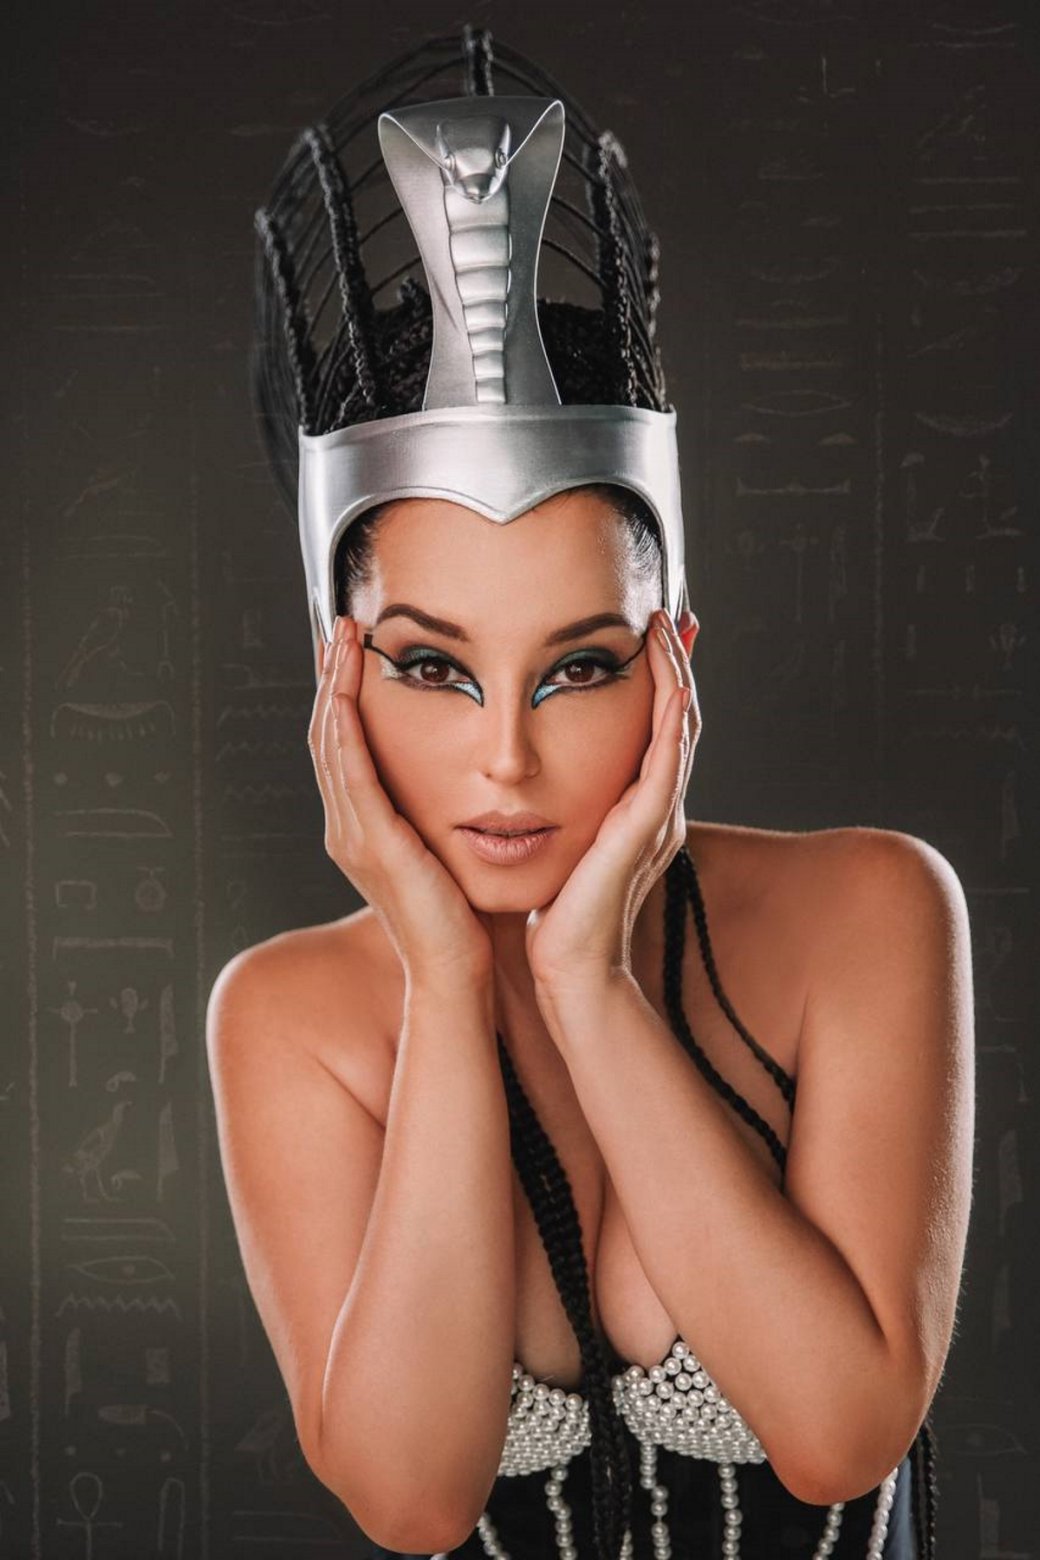 Галерея Модель представила роскошный образ Клеопатры из фильма про Астерикса и Обеликса - 10 фото